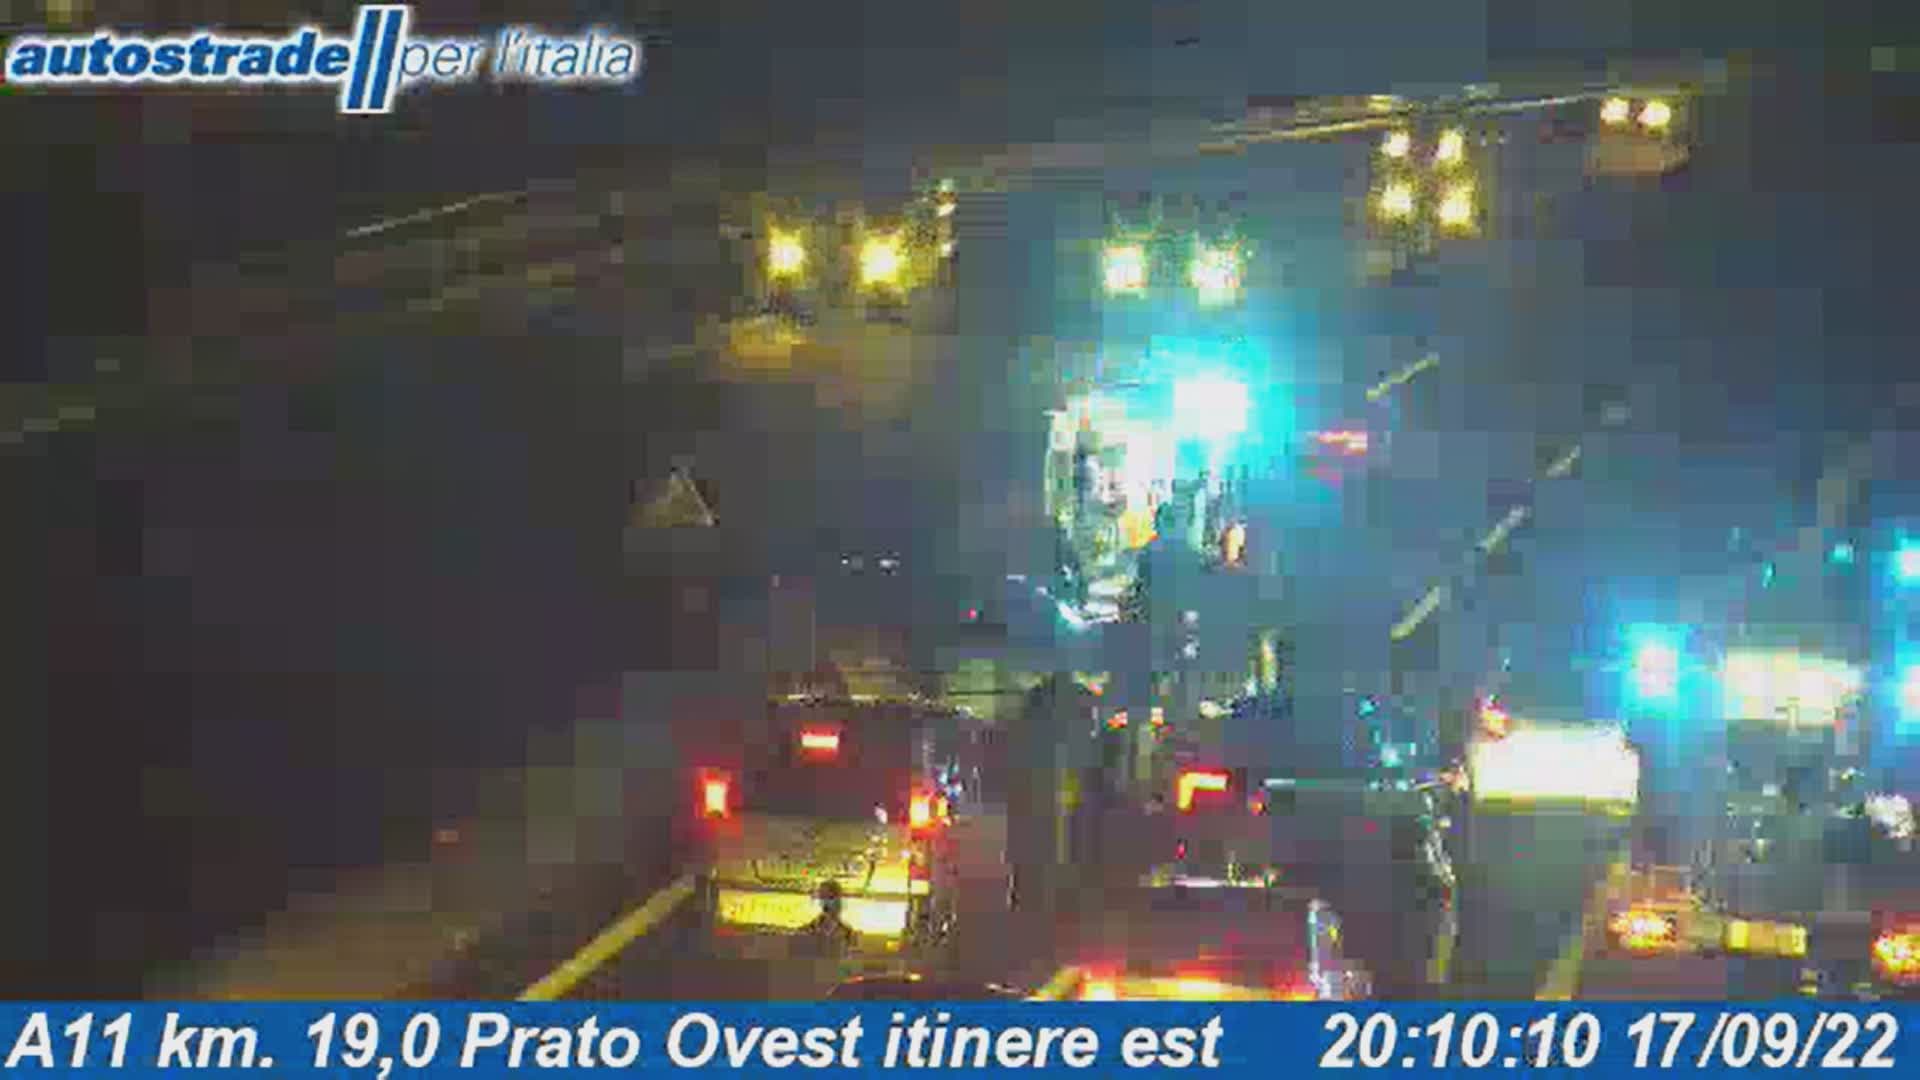 Incidente in A11 tra Pistoia e Prato Ovest